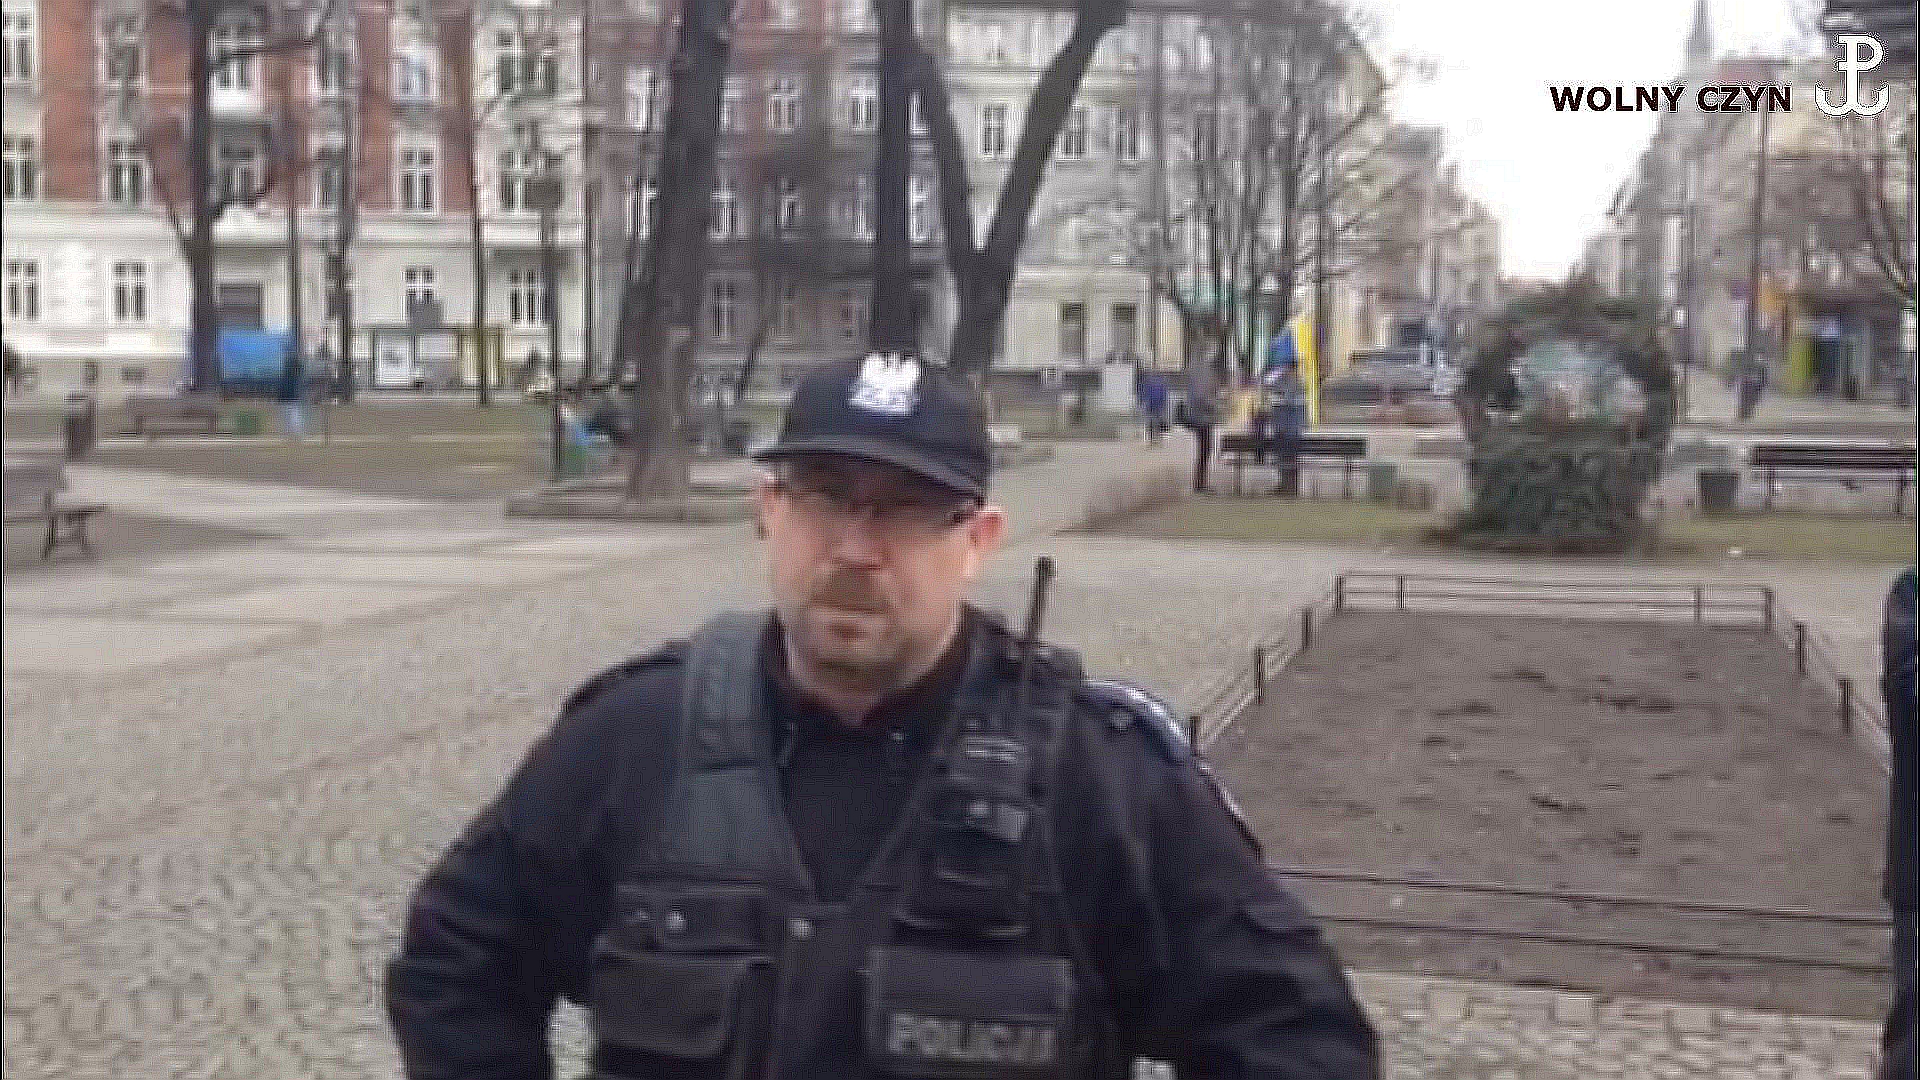 WOLNY CZYN: 30 stycznia Katowice: Polacy kontra V kolumna Niemiec. Część 2: policja